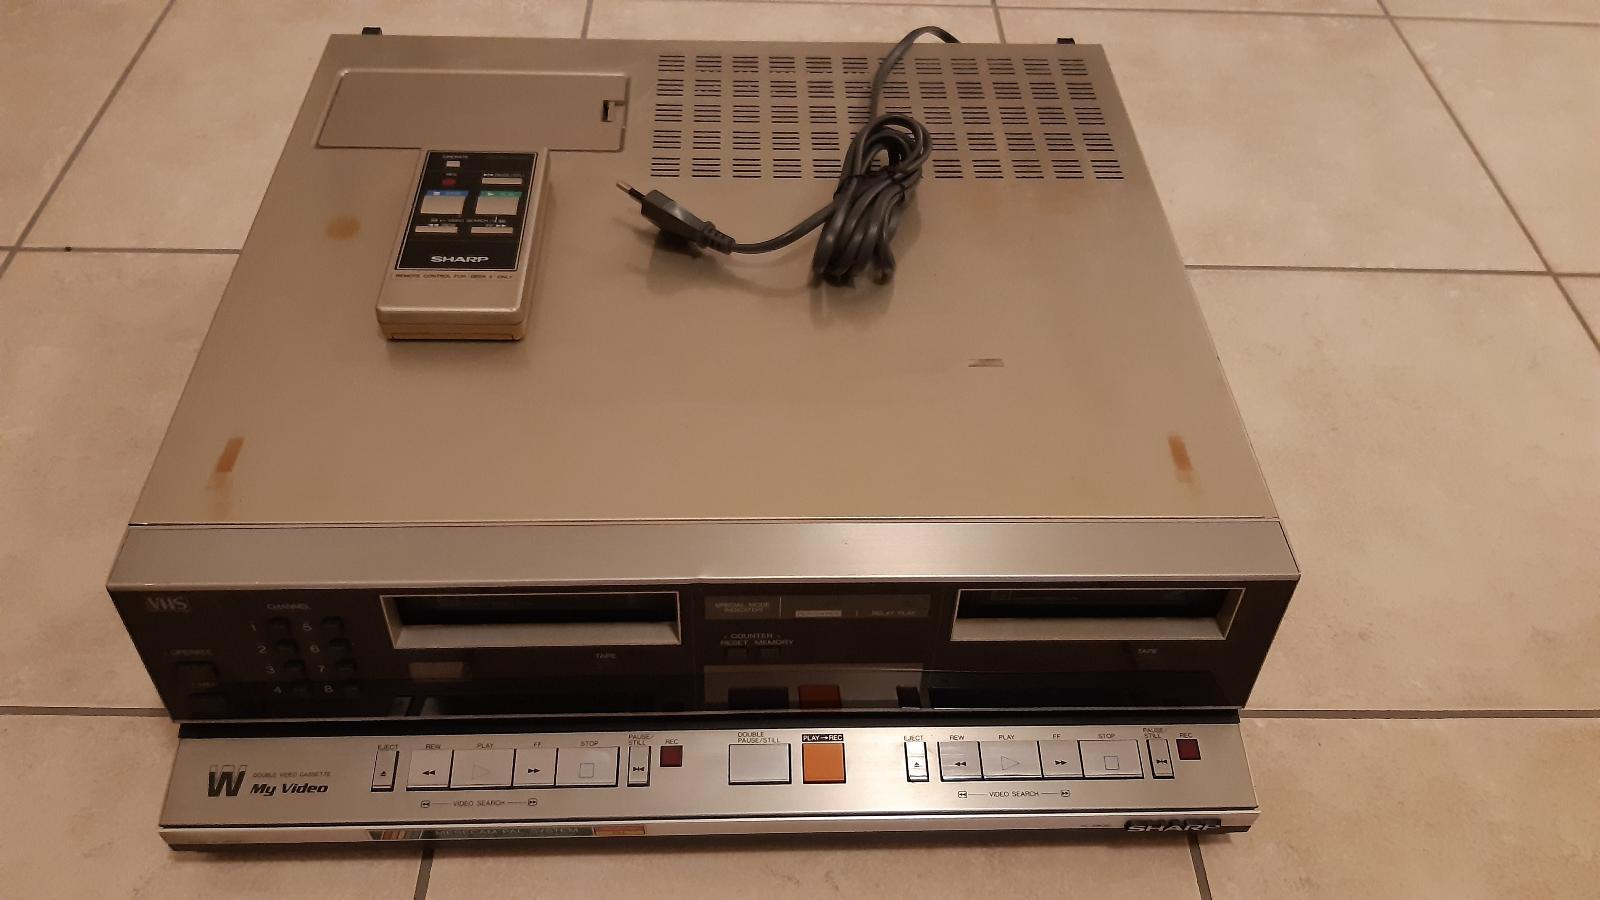 Raritní DOUBLE videorekordér SHARP VC-5W20E cca 1983 (asi nefunkční) - TV, audio, video